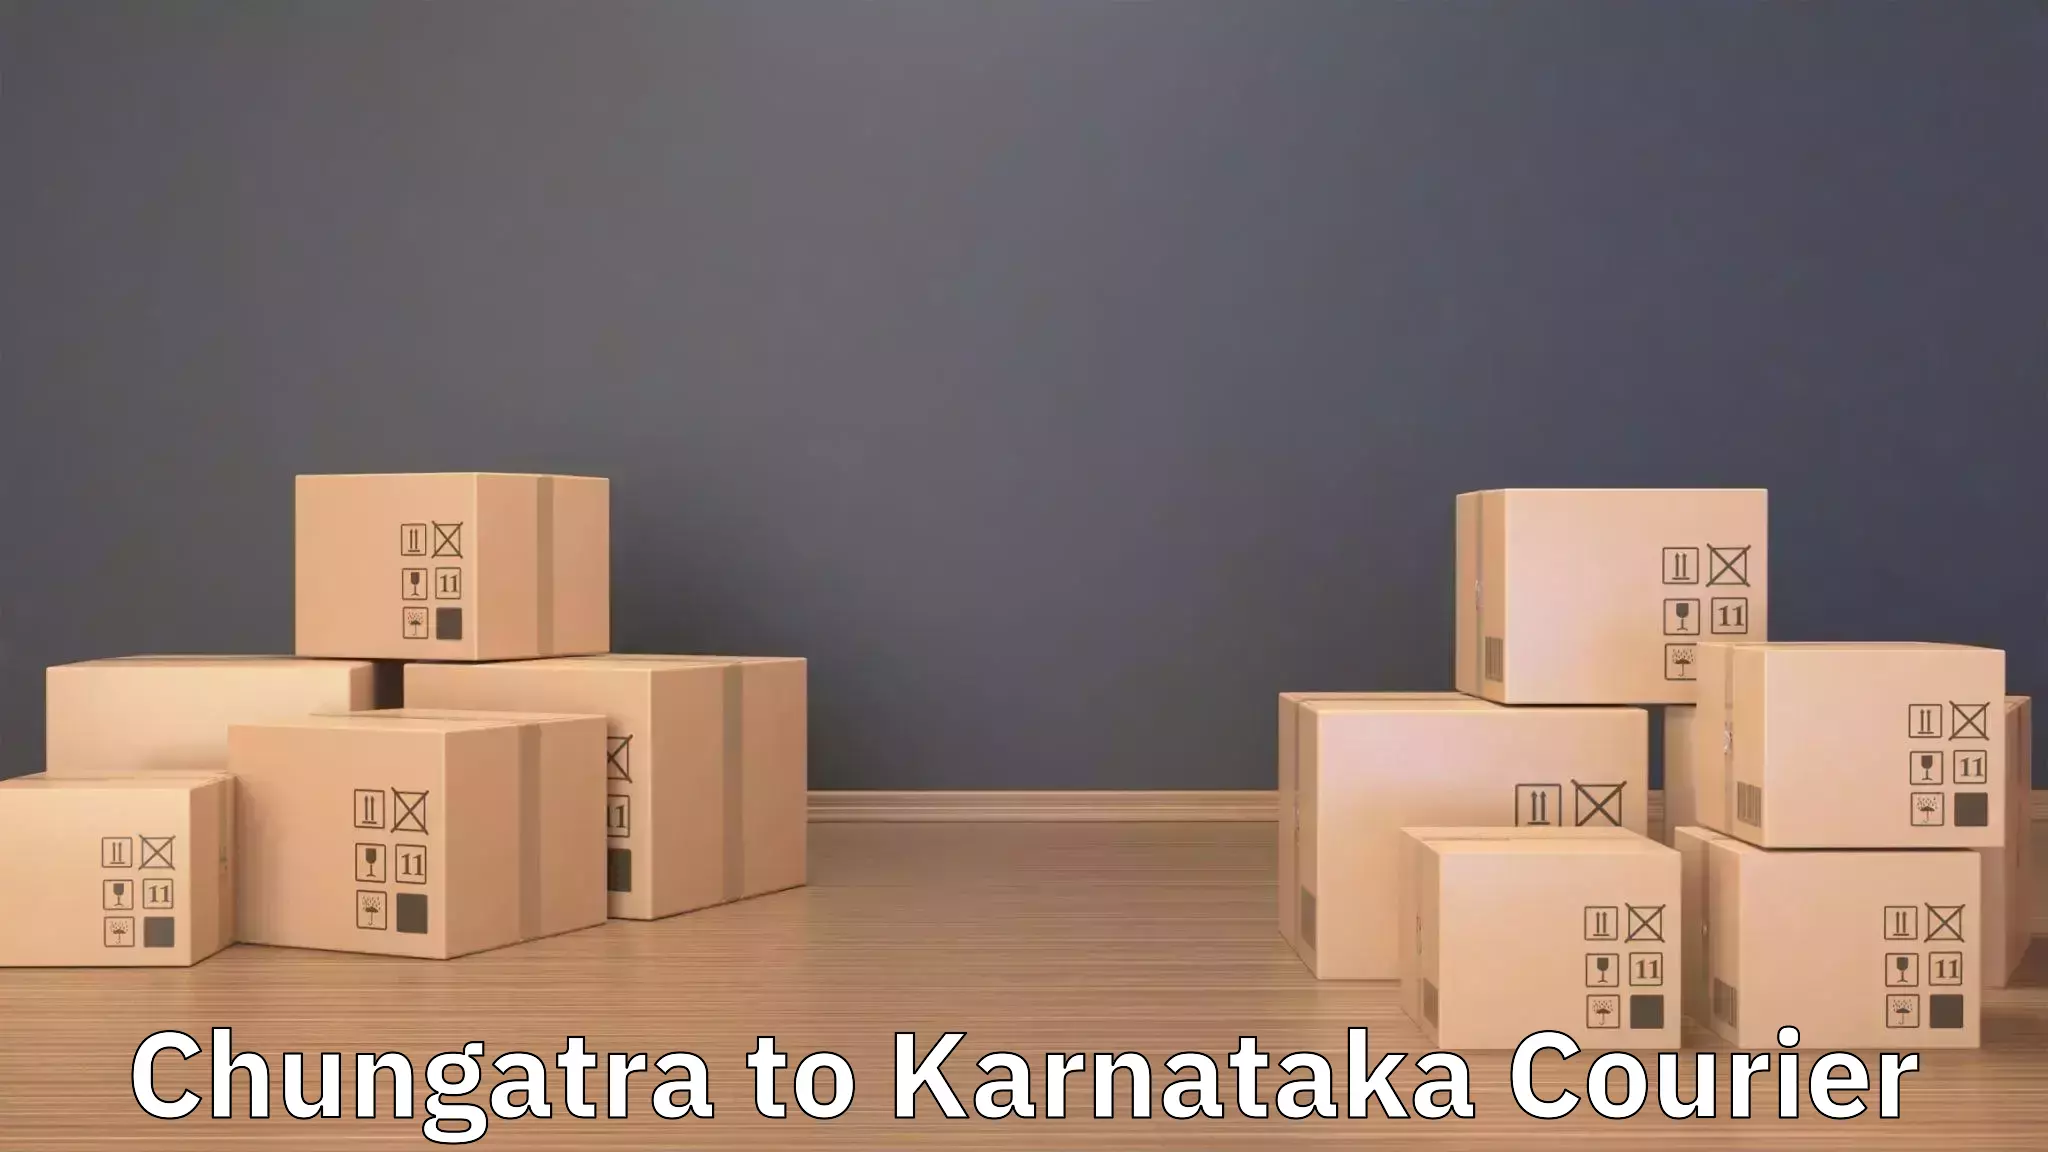 Budget-friendly movers Chungatra to Kanjarakatte